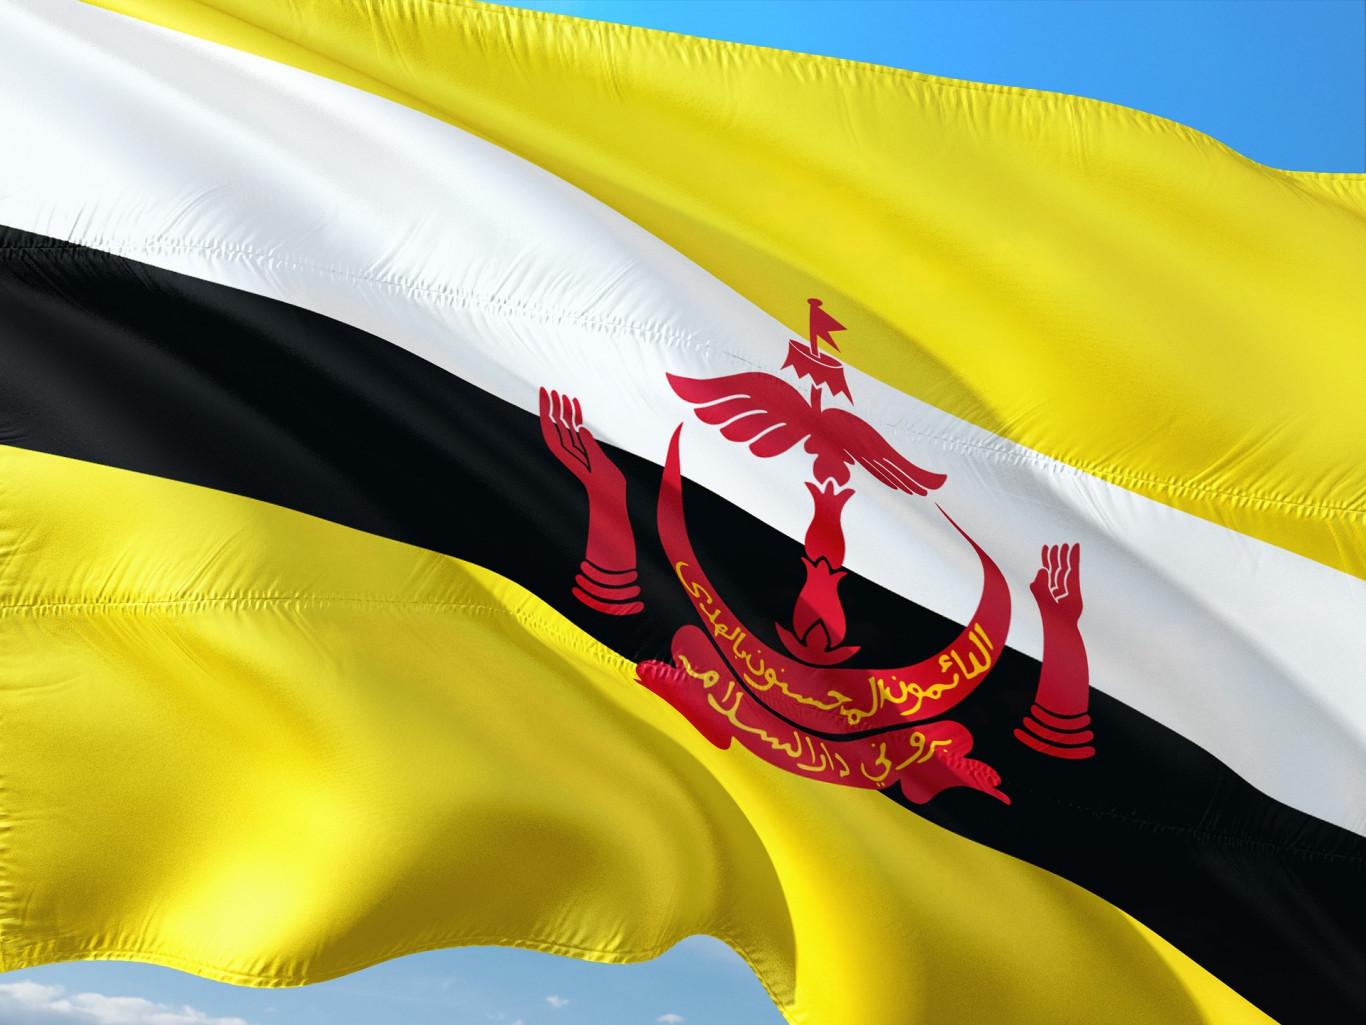 Quy trình đăng ký nhãn hiệu quốc tế tại Brunei, Quy trình đăng ký nhãn hiệu tại Brunei, quy trình đăng ký thương hiệu tại Brunei, quy trình bảo hộ thương hiệu tại Brunei